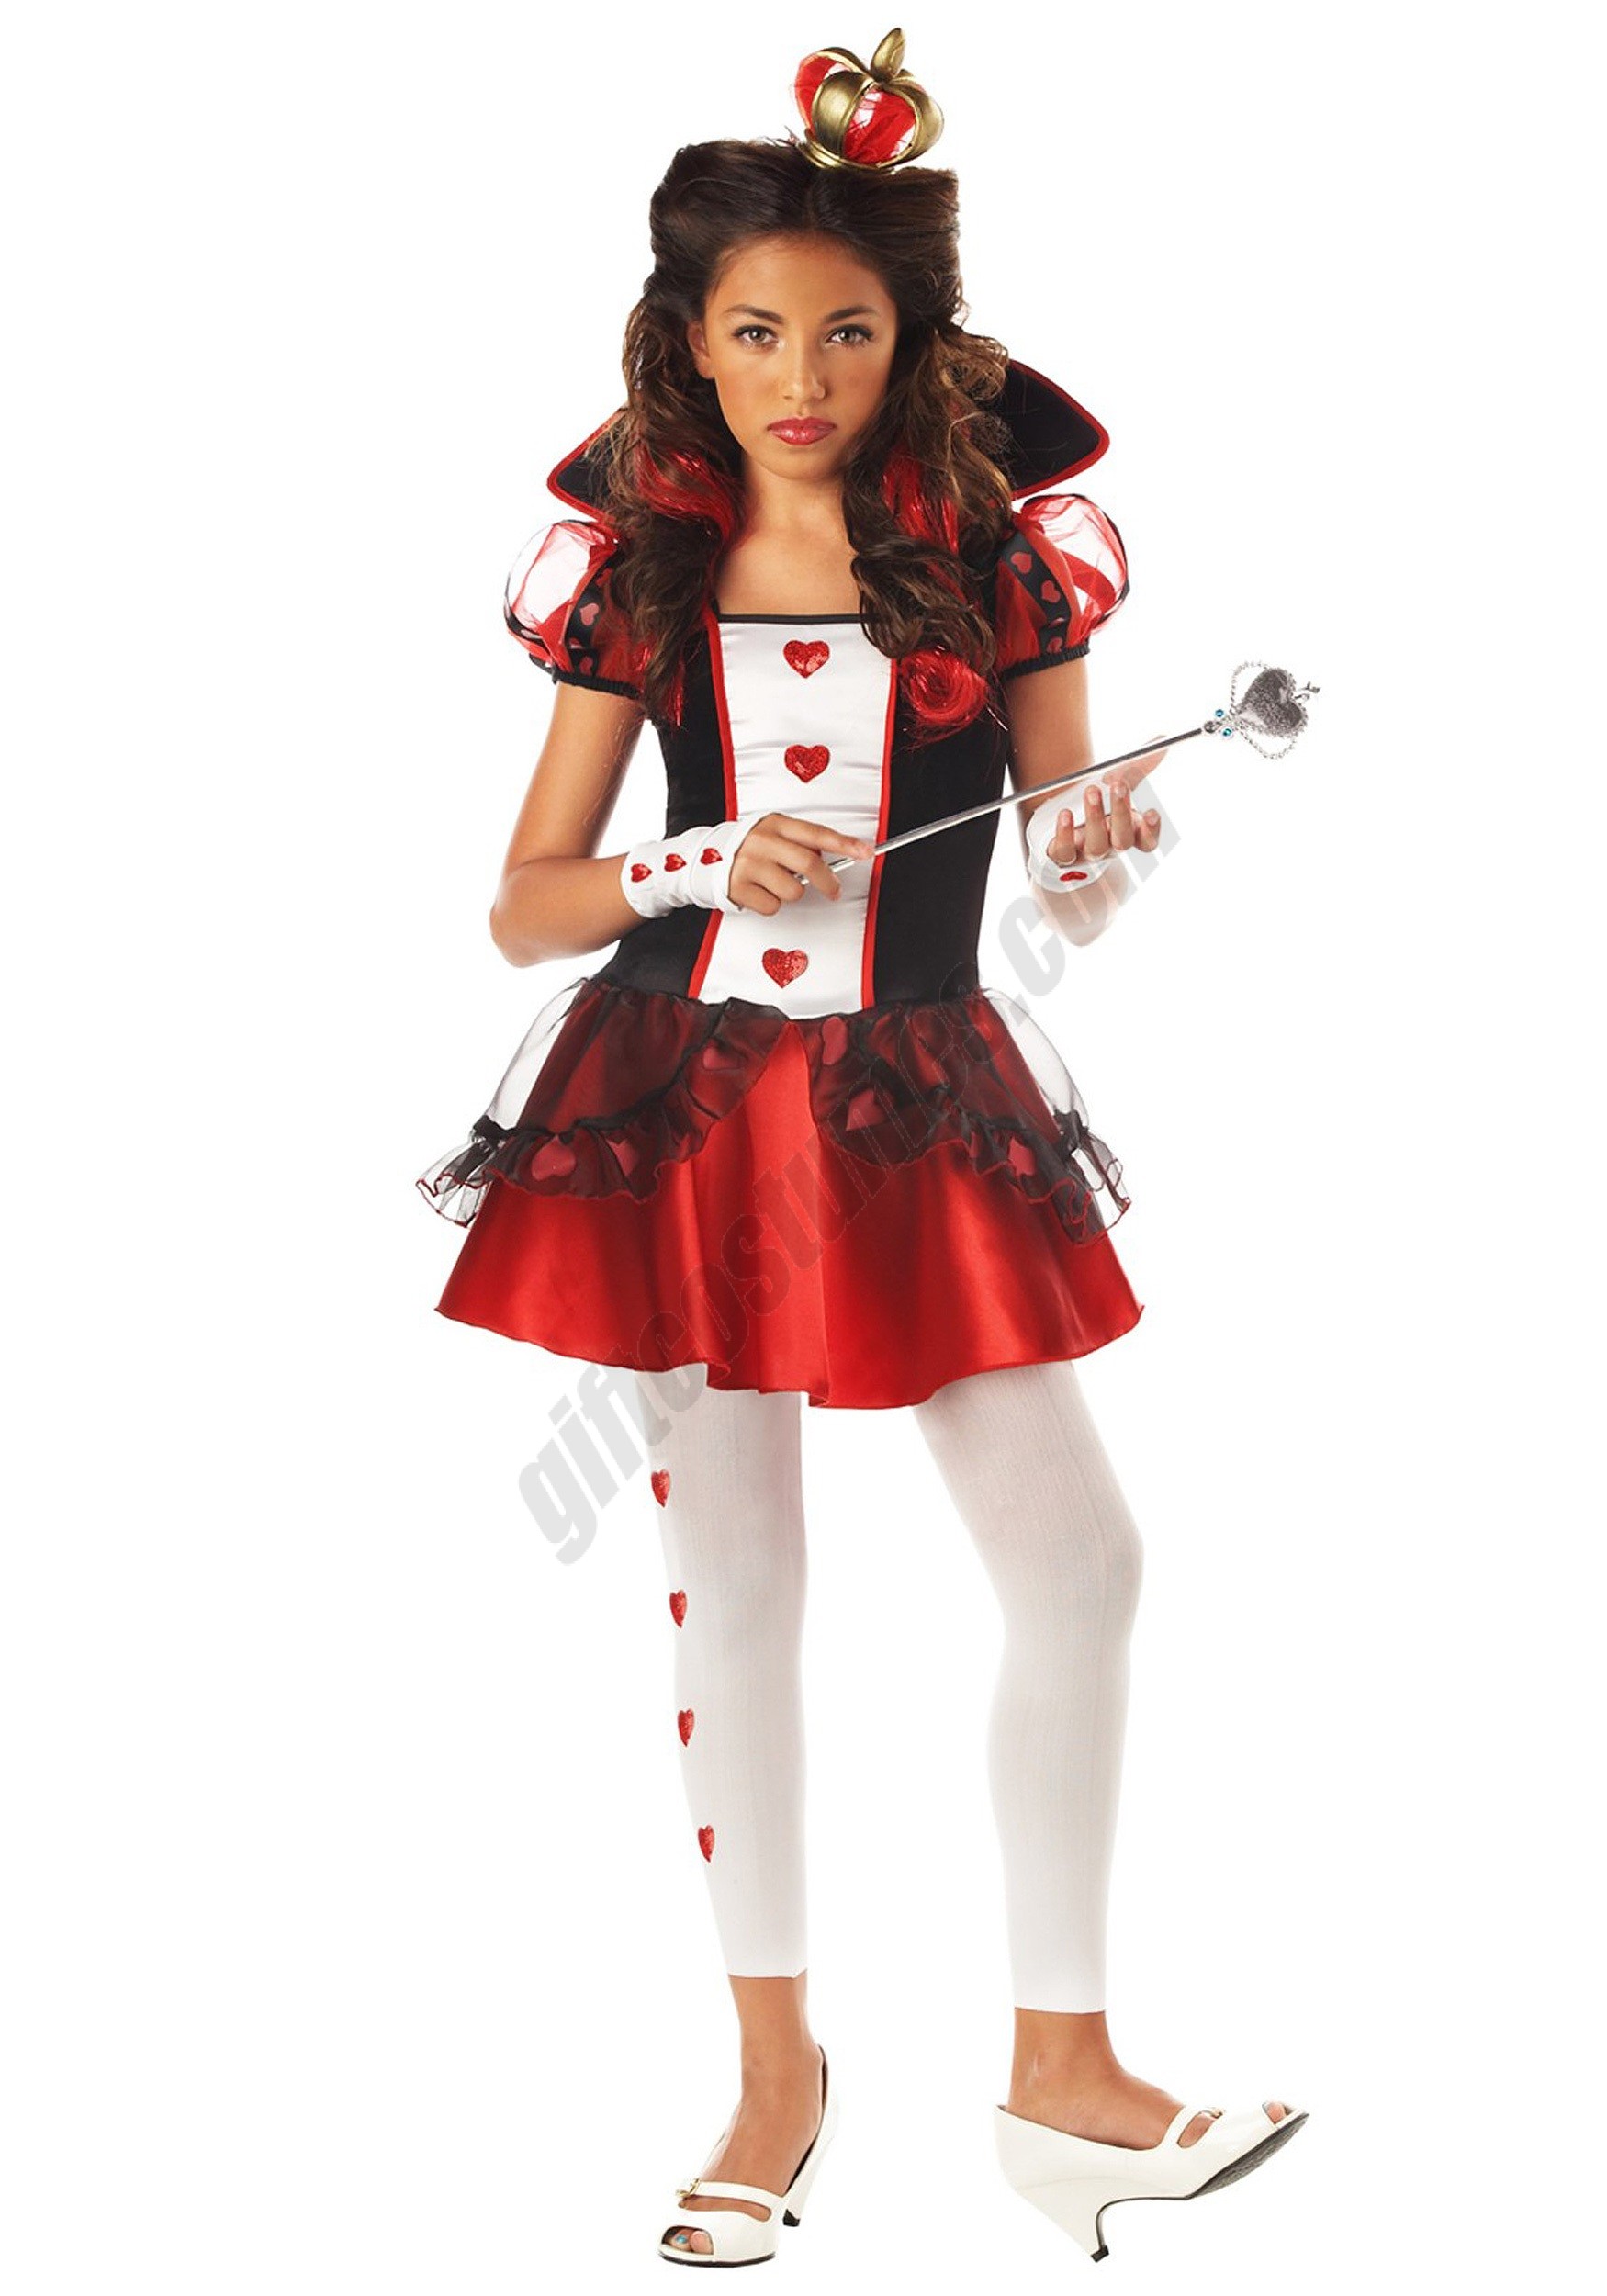 Tween Queen of Hearts Costume Promotions - Tween Queen of Hearts Costume Promotions